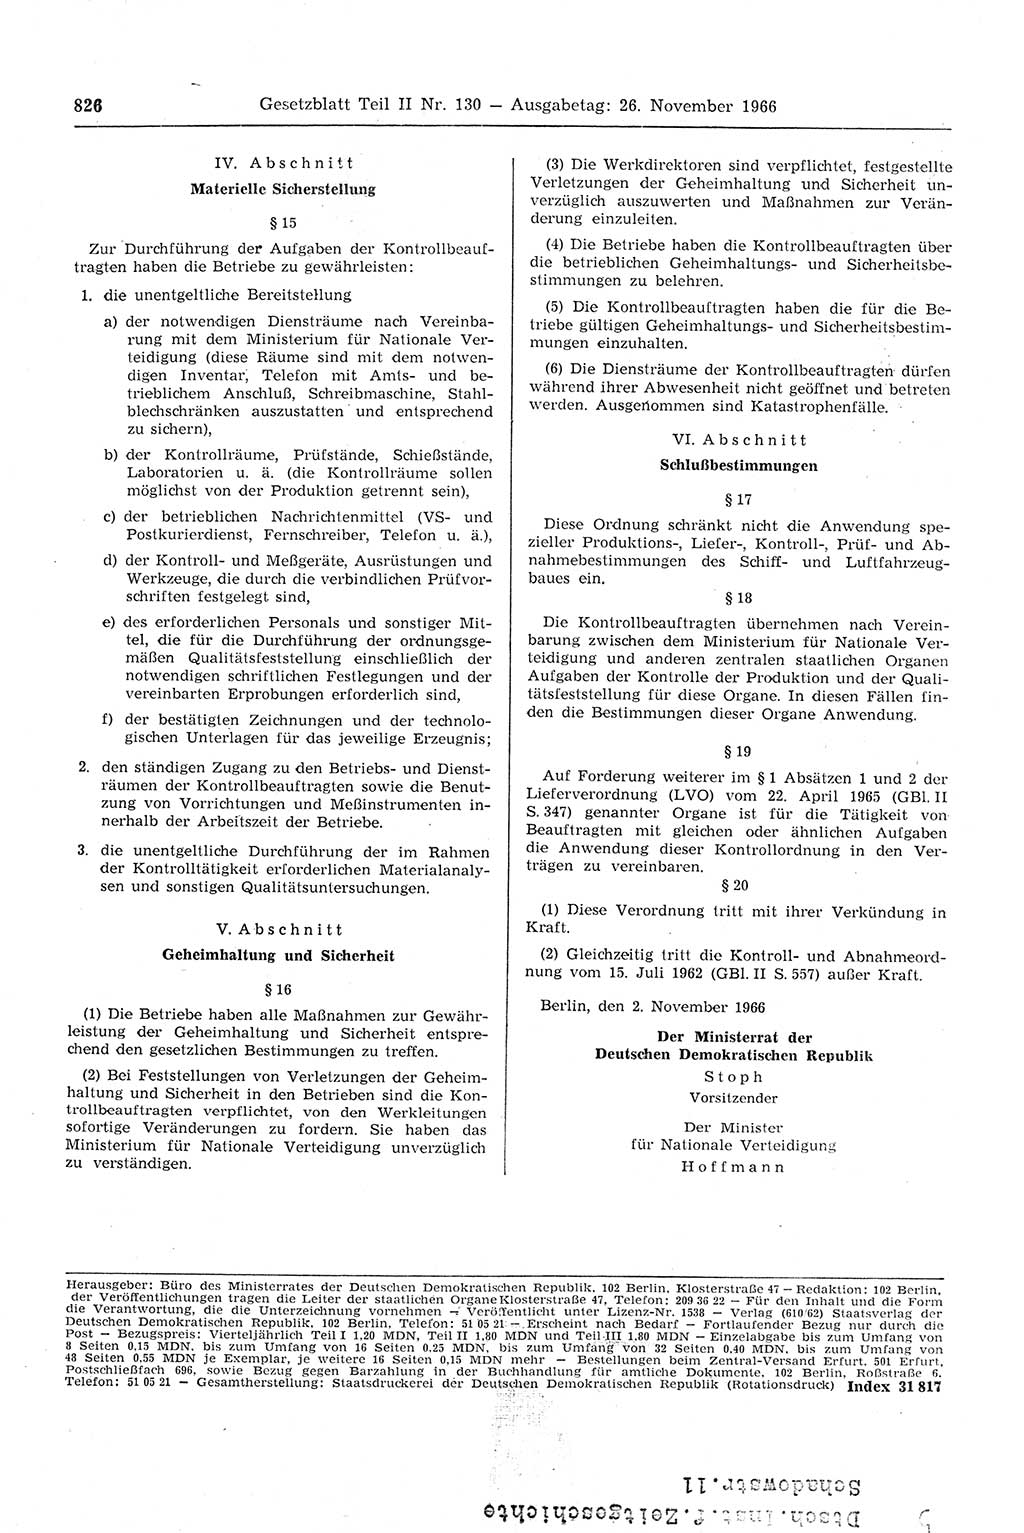 Gesetzblatt (GBl.) der Deutschen Demokratischen Republik (DDR) Teil ⅠⅠ 1966, Seite 826 (GBl. DDR ⅠⅠ 1966, S. 826)